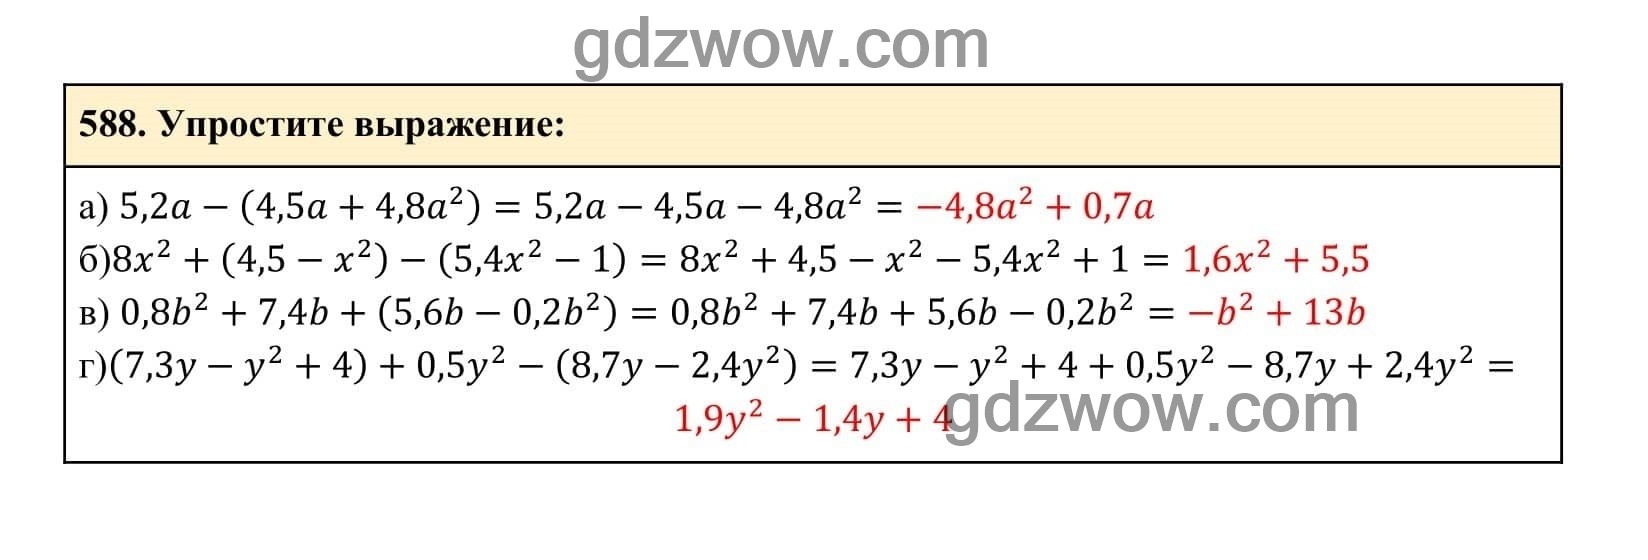 Упражнение 588 - ГДЗ по Алгебре 7 класс Учебник Макарычев (решебник) - GDZwow